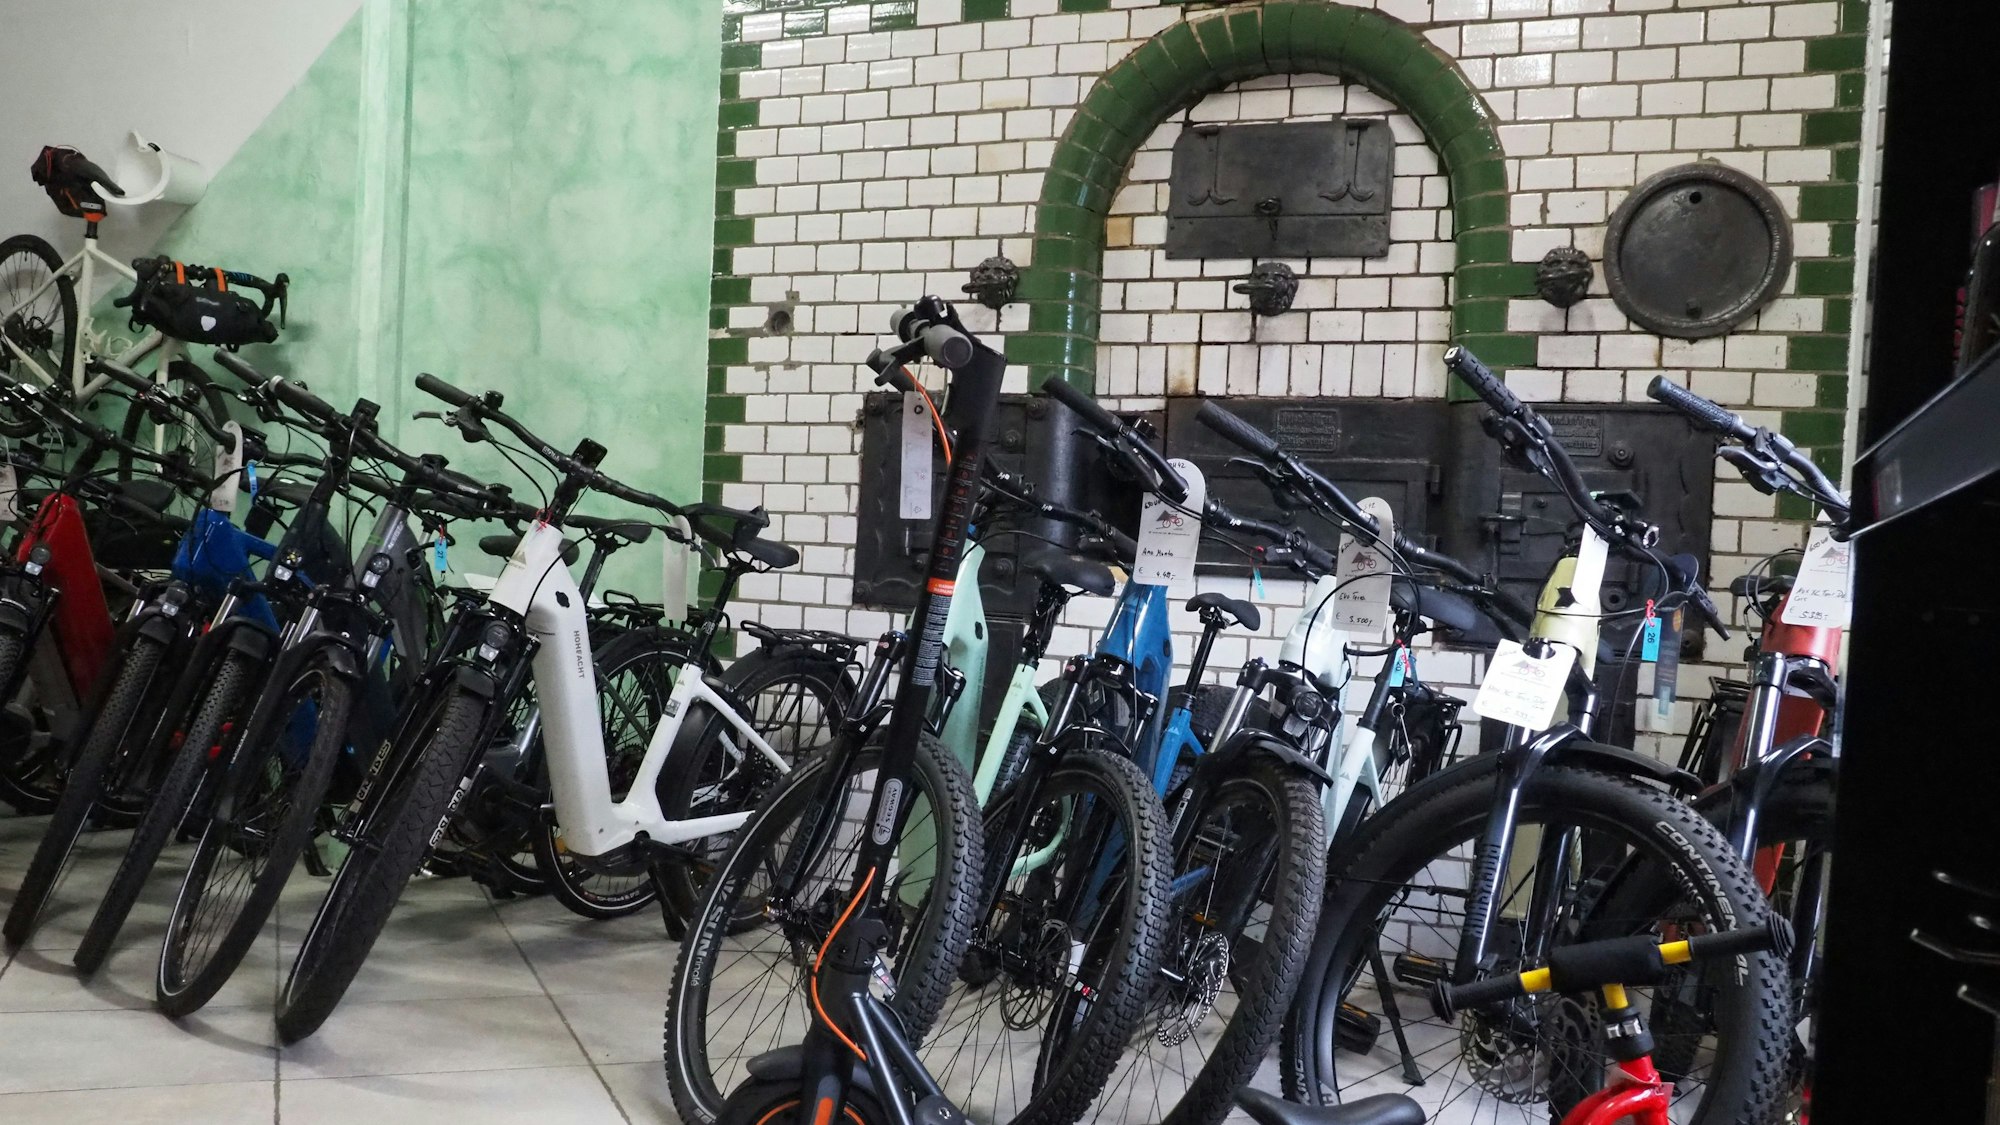 Zahlreiche neue Fahrräder stehen vor einem historischen Backofen: Das Fahrradgeschäft war in einer ehemaligen Bäckerei.